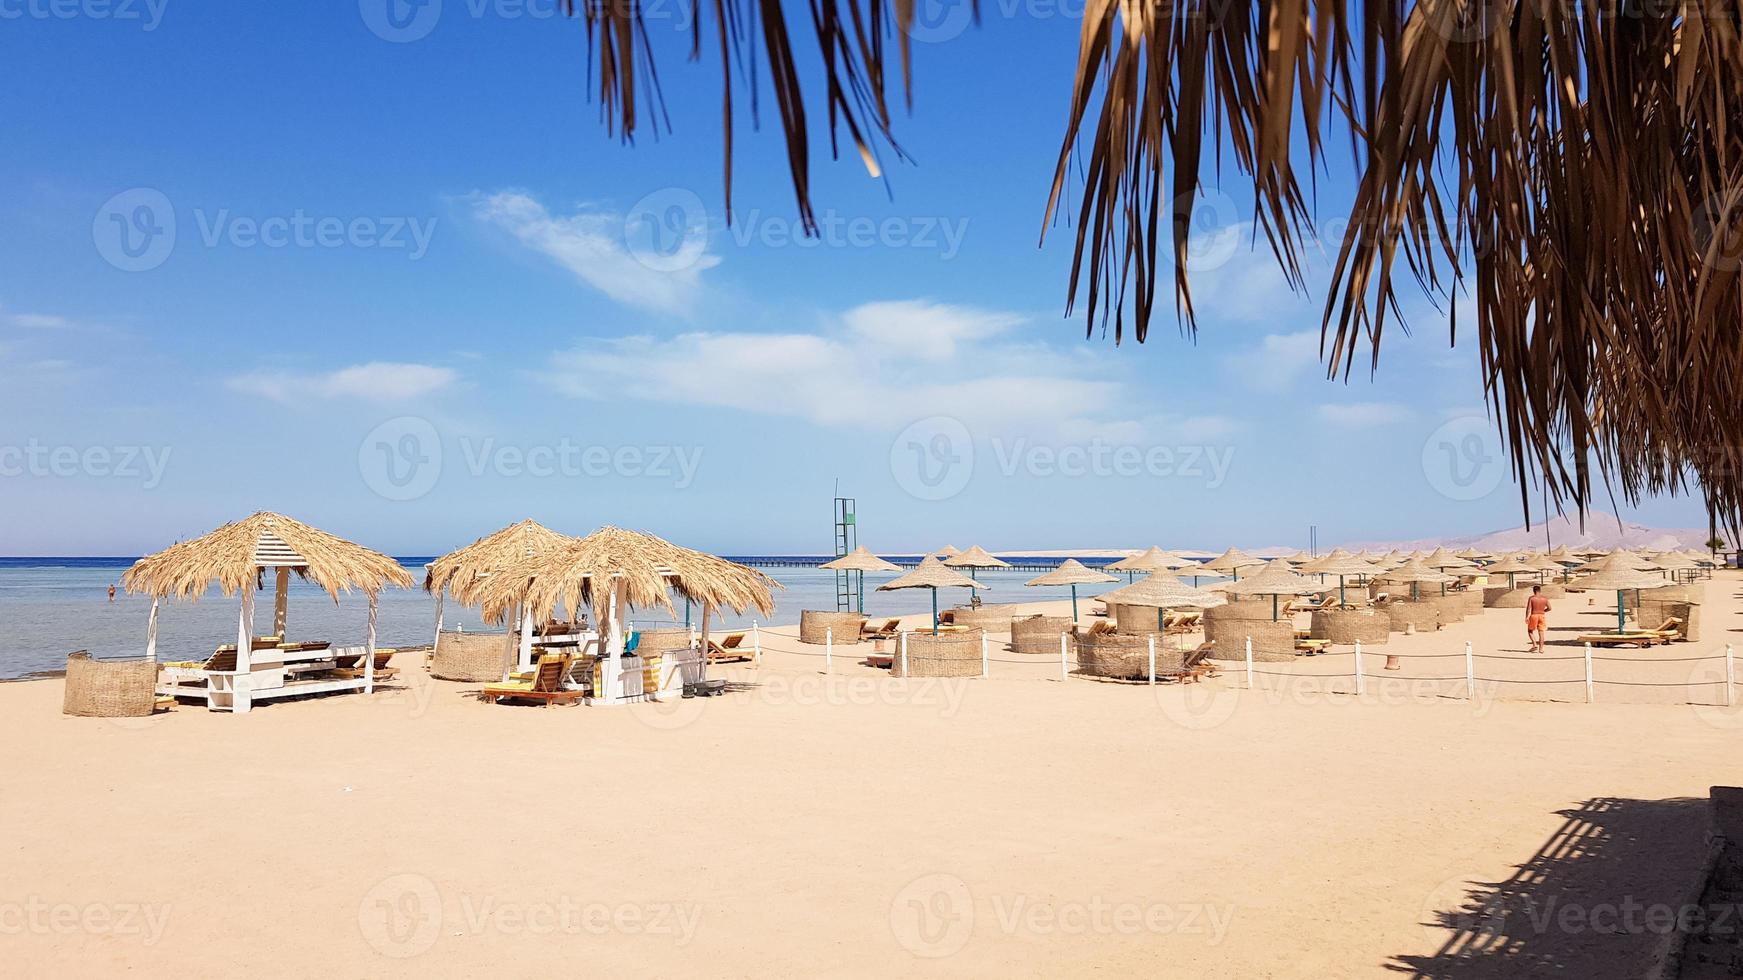 uma bela praia tropical com guarda-sóis de palha nas margens do mar vermelho em sharm el sheikh. paisagem de verão bela praia ensolarada no Egito. o conceito de férias, viagens, férias foto